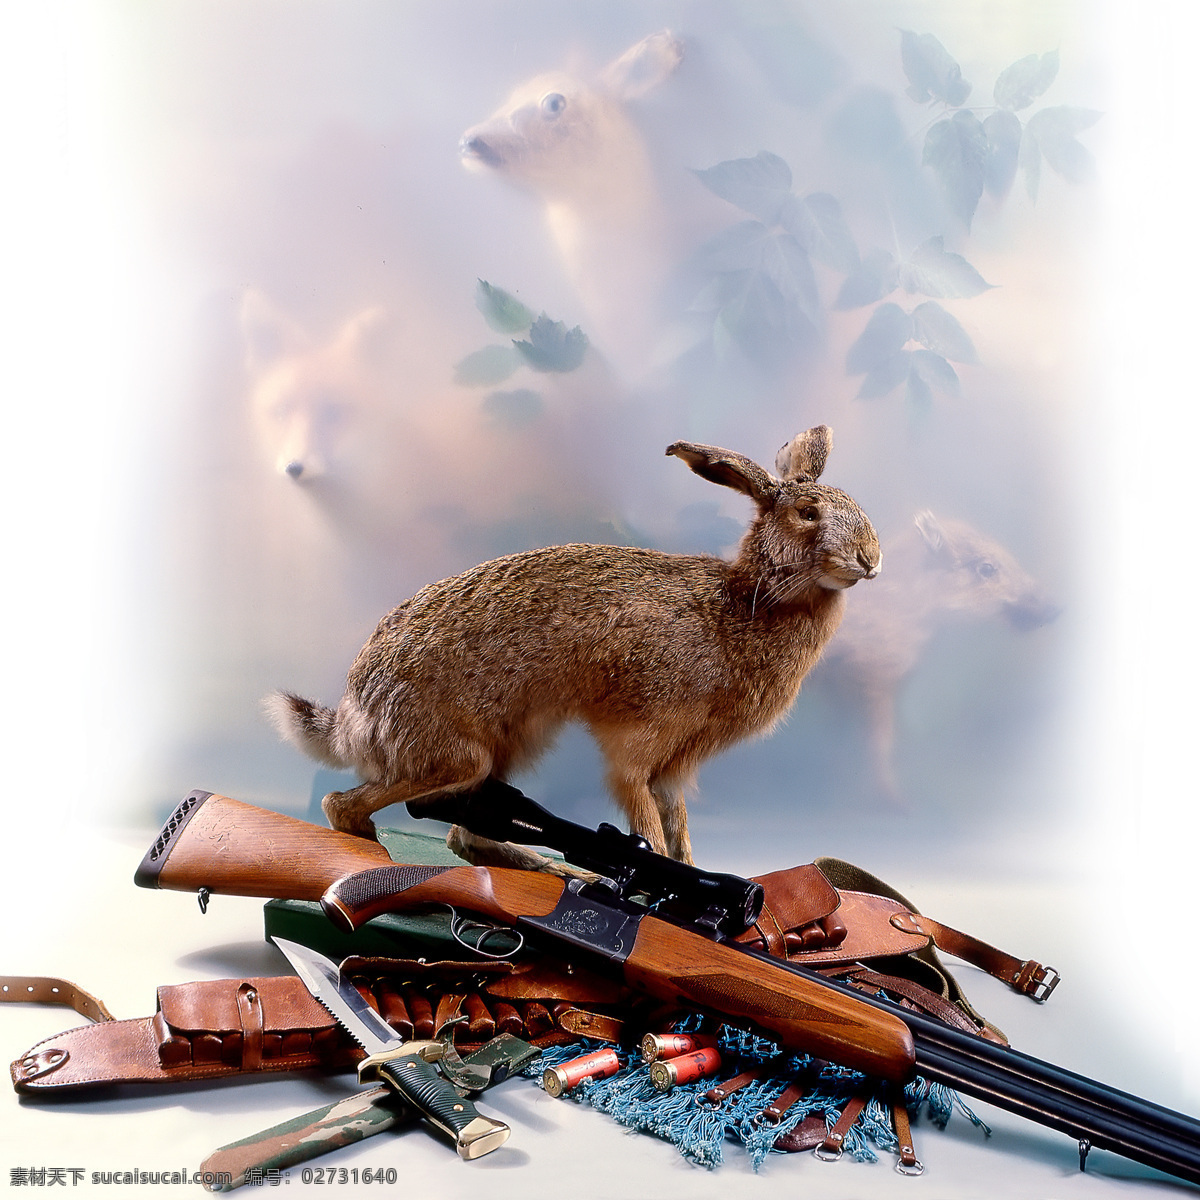 狩猎 工具 动物 兔子 打猎 枪 猎枪 射击 枪击 打枪 运动 军事武器 刀 其他类别 生活百科